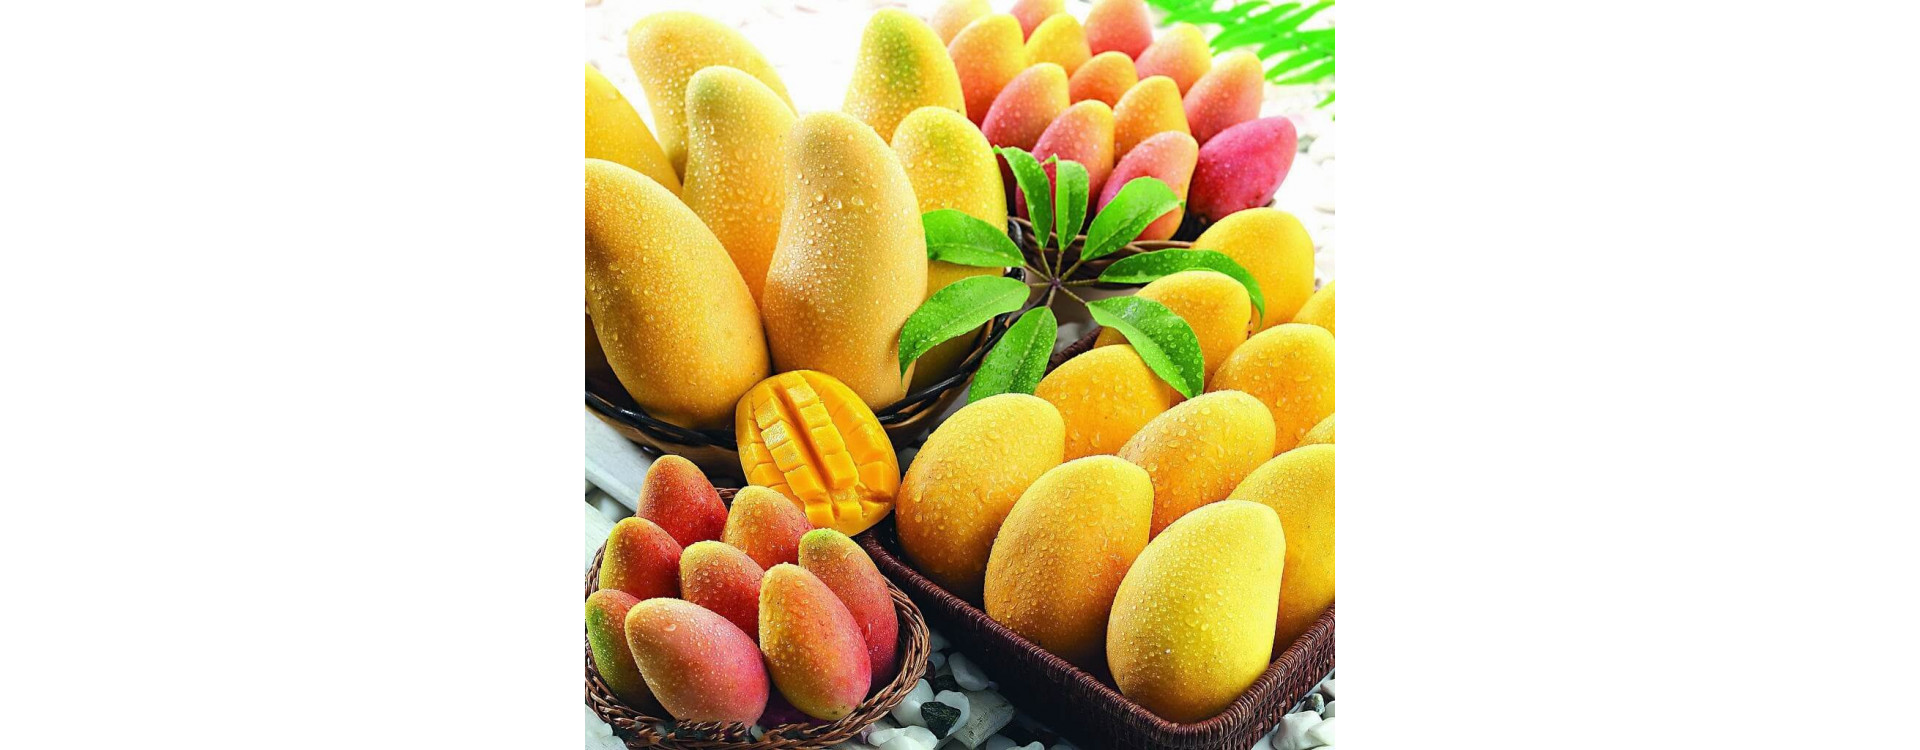 Польза манго для организма человека